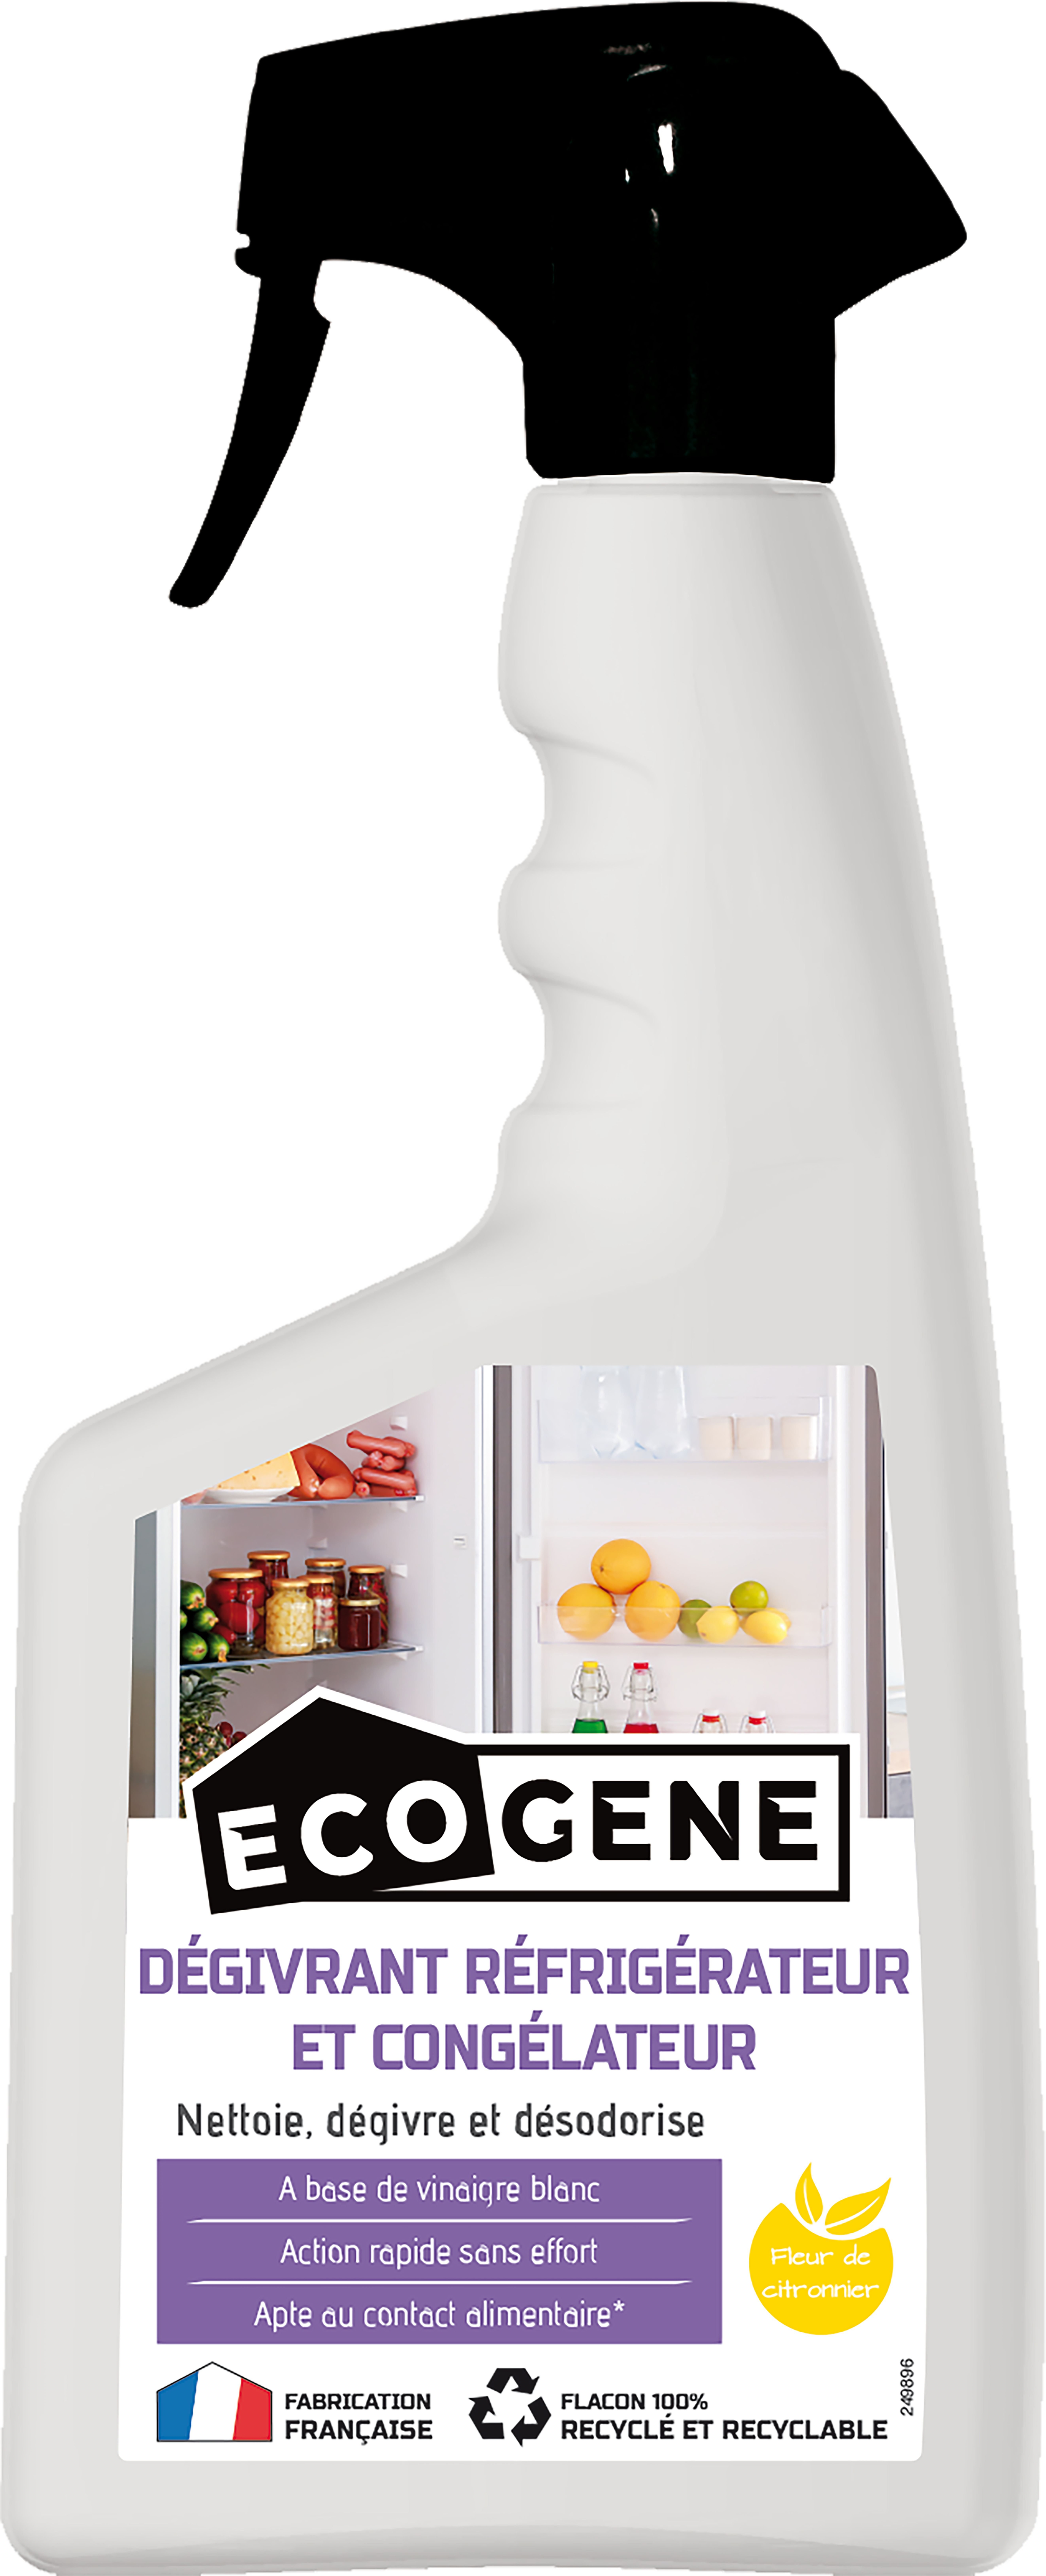 Degivrant refrigerateur et congelateur ecogene 500 ml